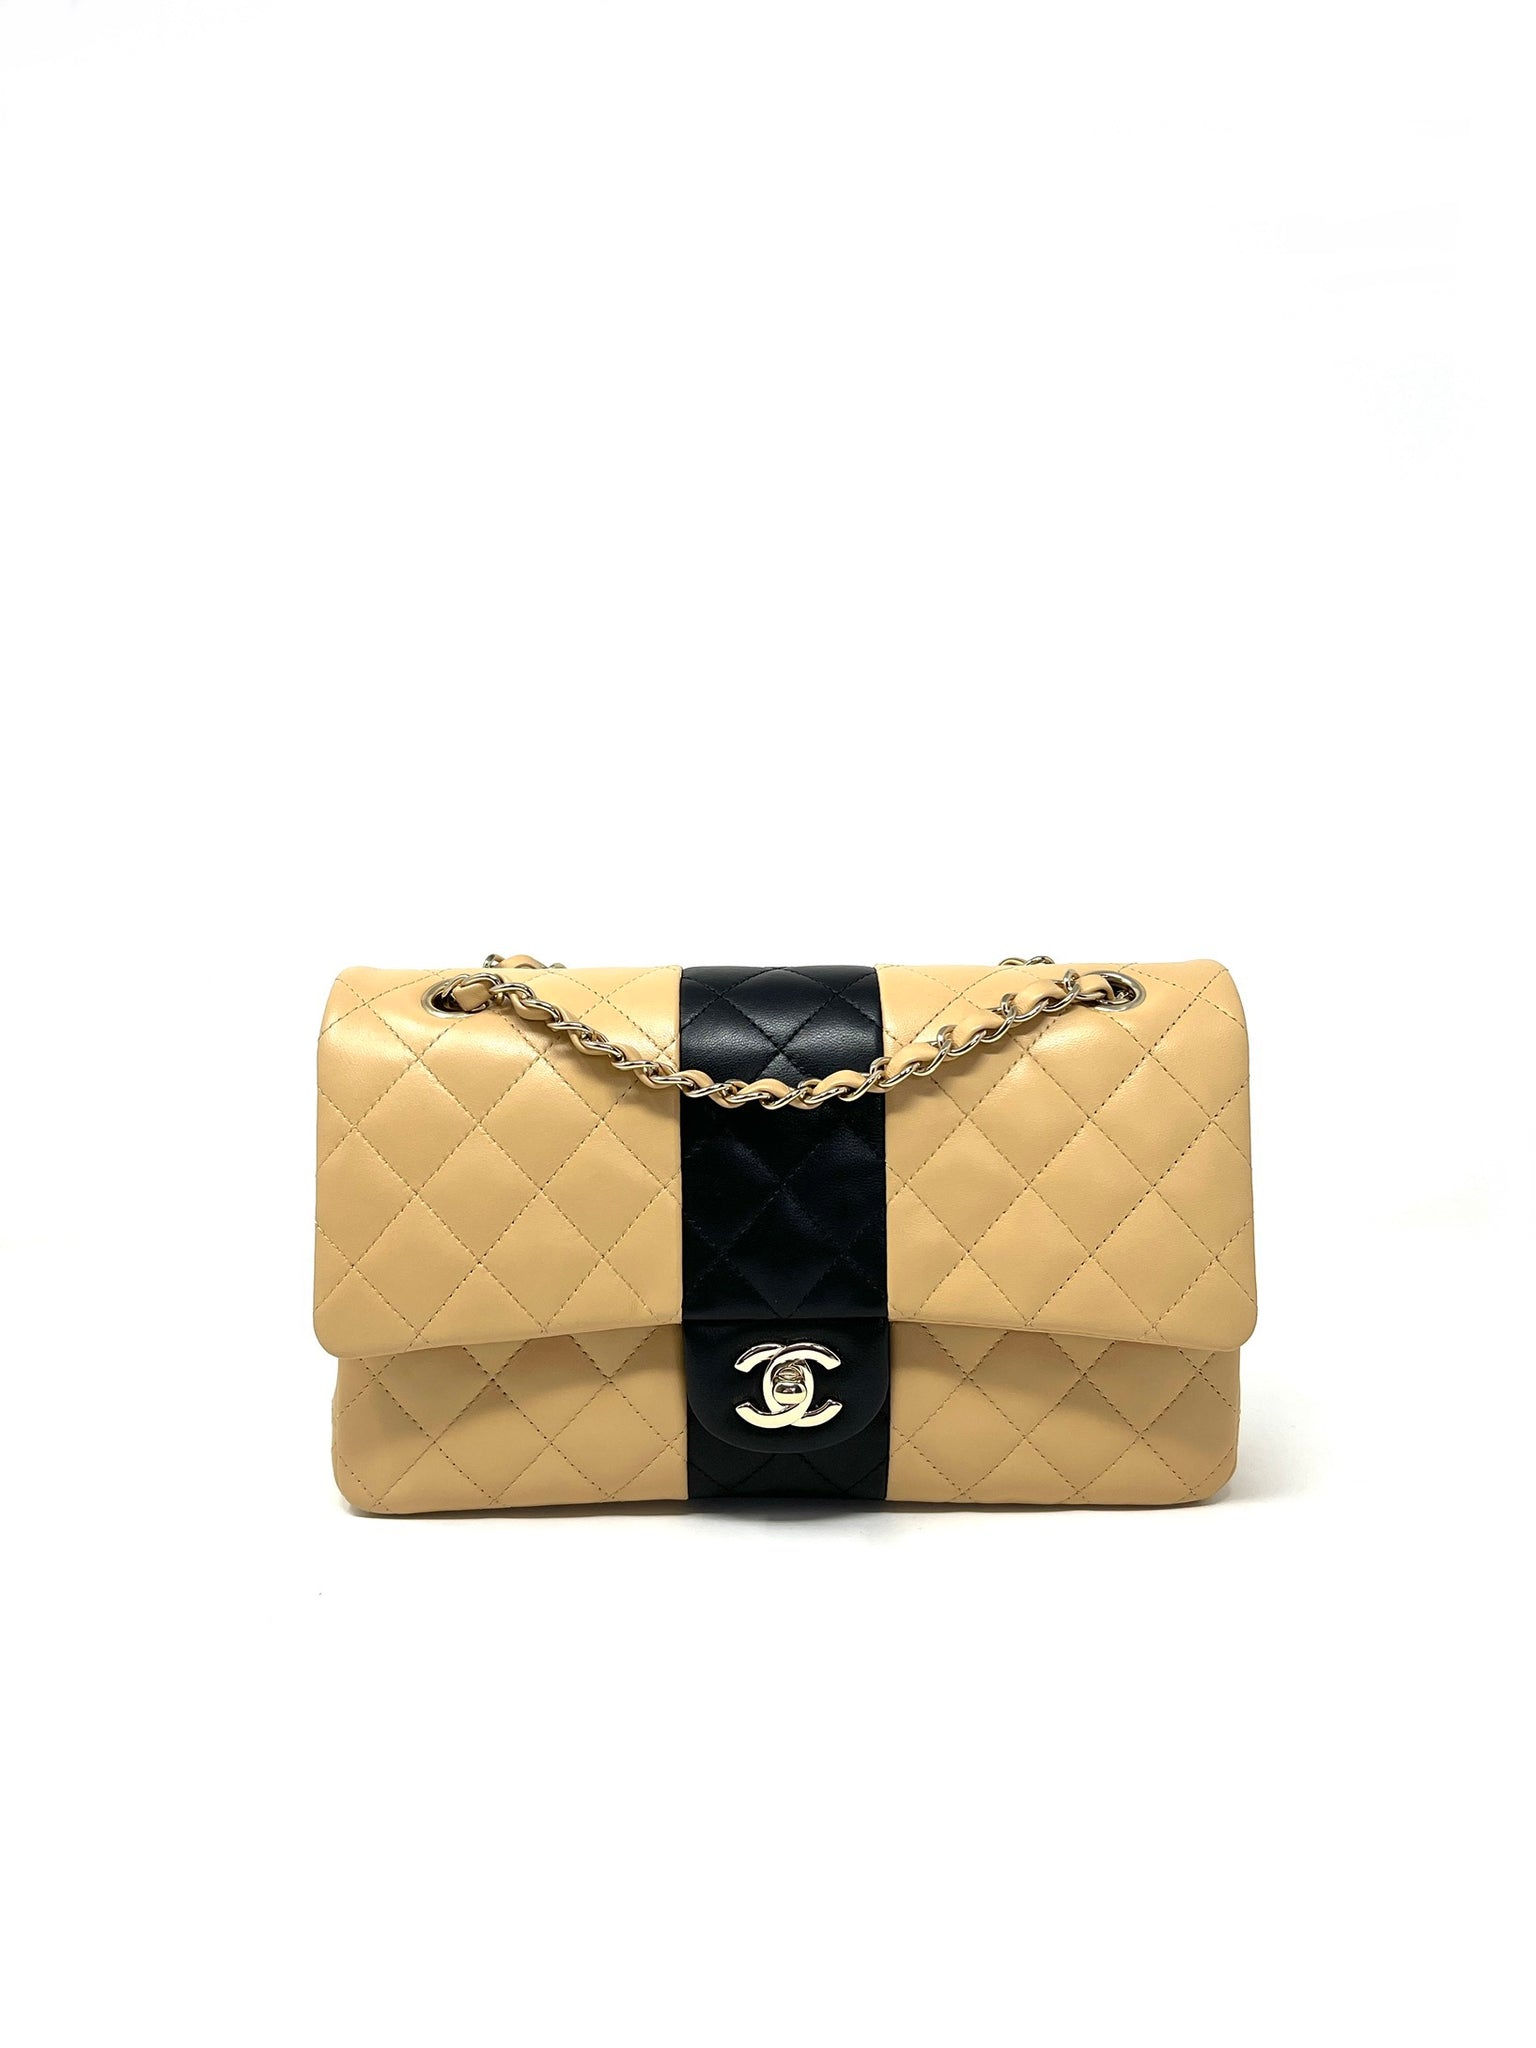 Chanel shoulder bag ladies' beige black gold matelasse bicolor